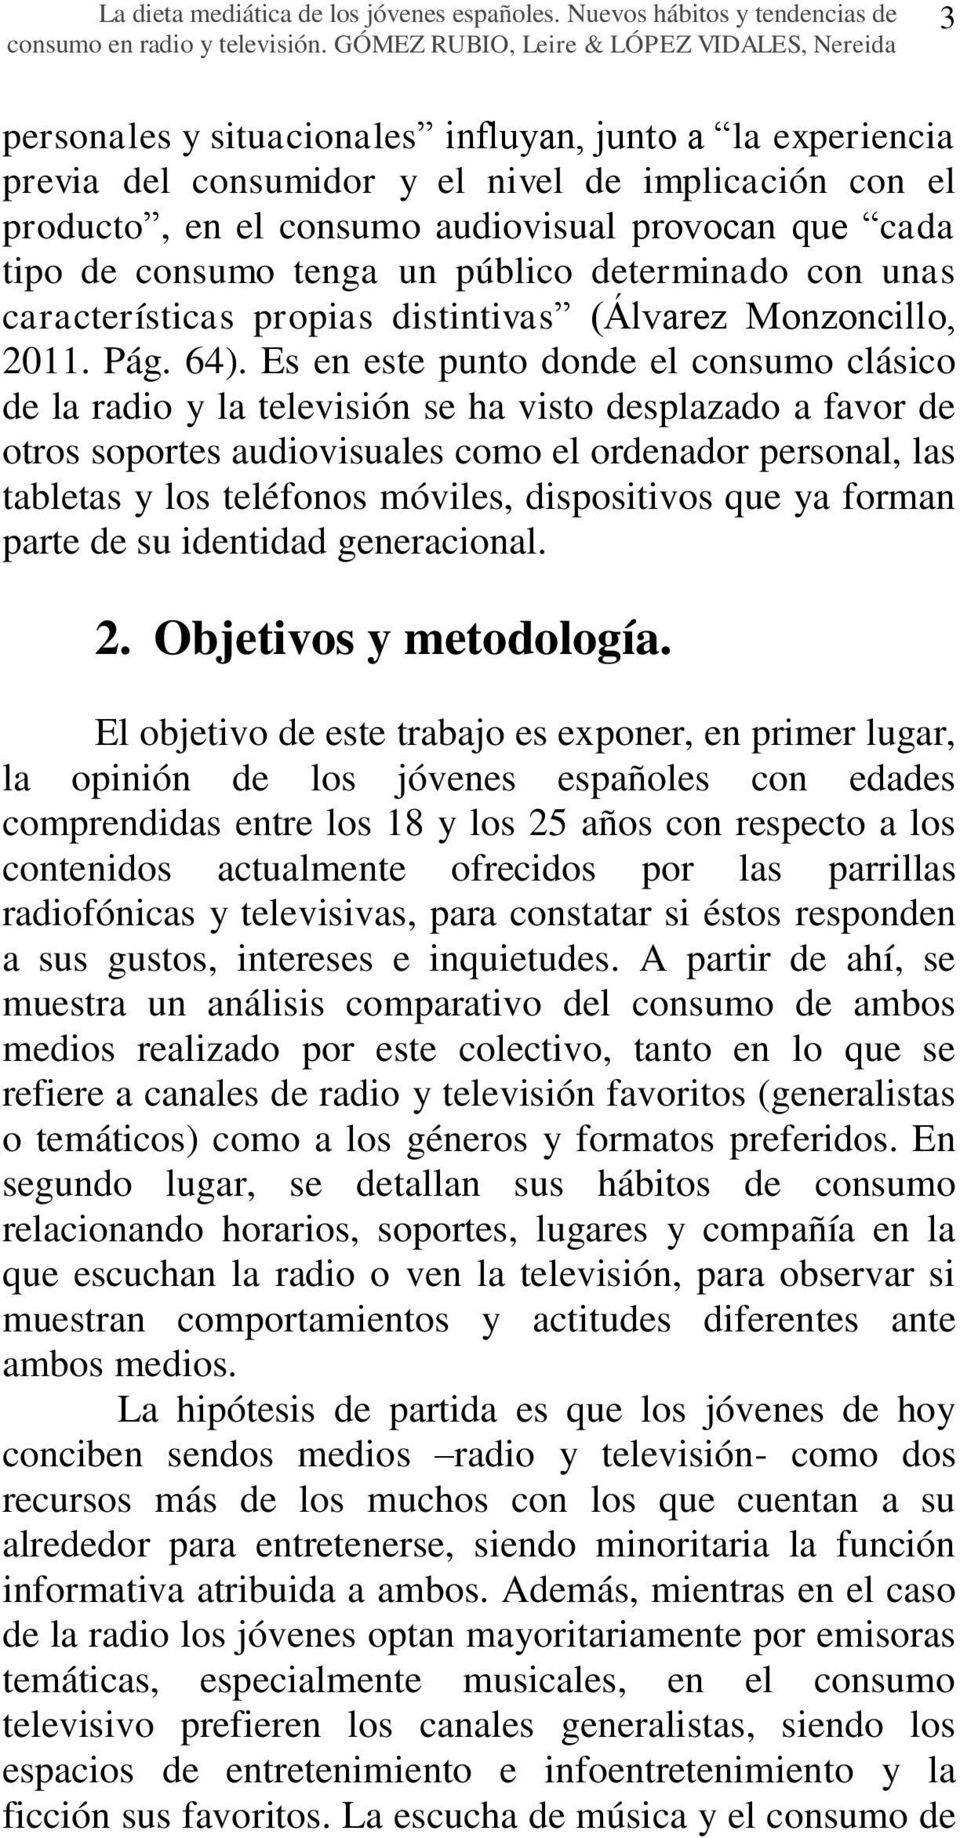 provocan que cada tipo de consumo tenga un público determinado con unas características propias distintivas (Álvarez Monzoncillo, 2011. Pág. 64).